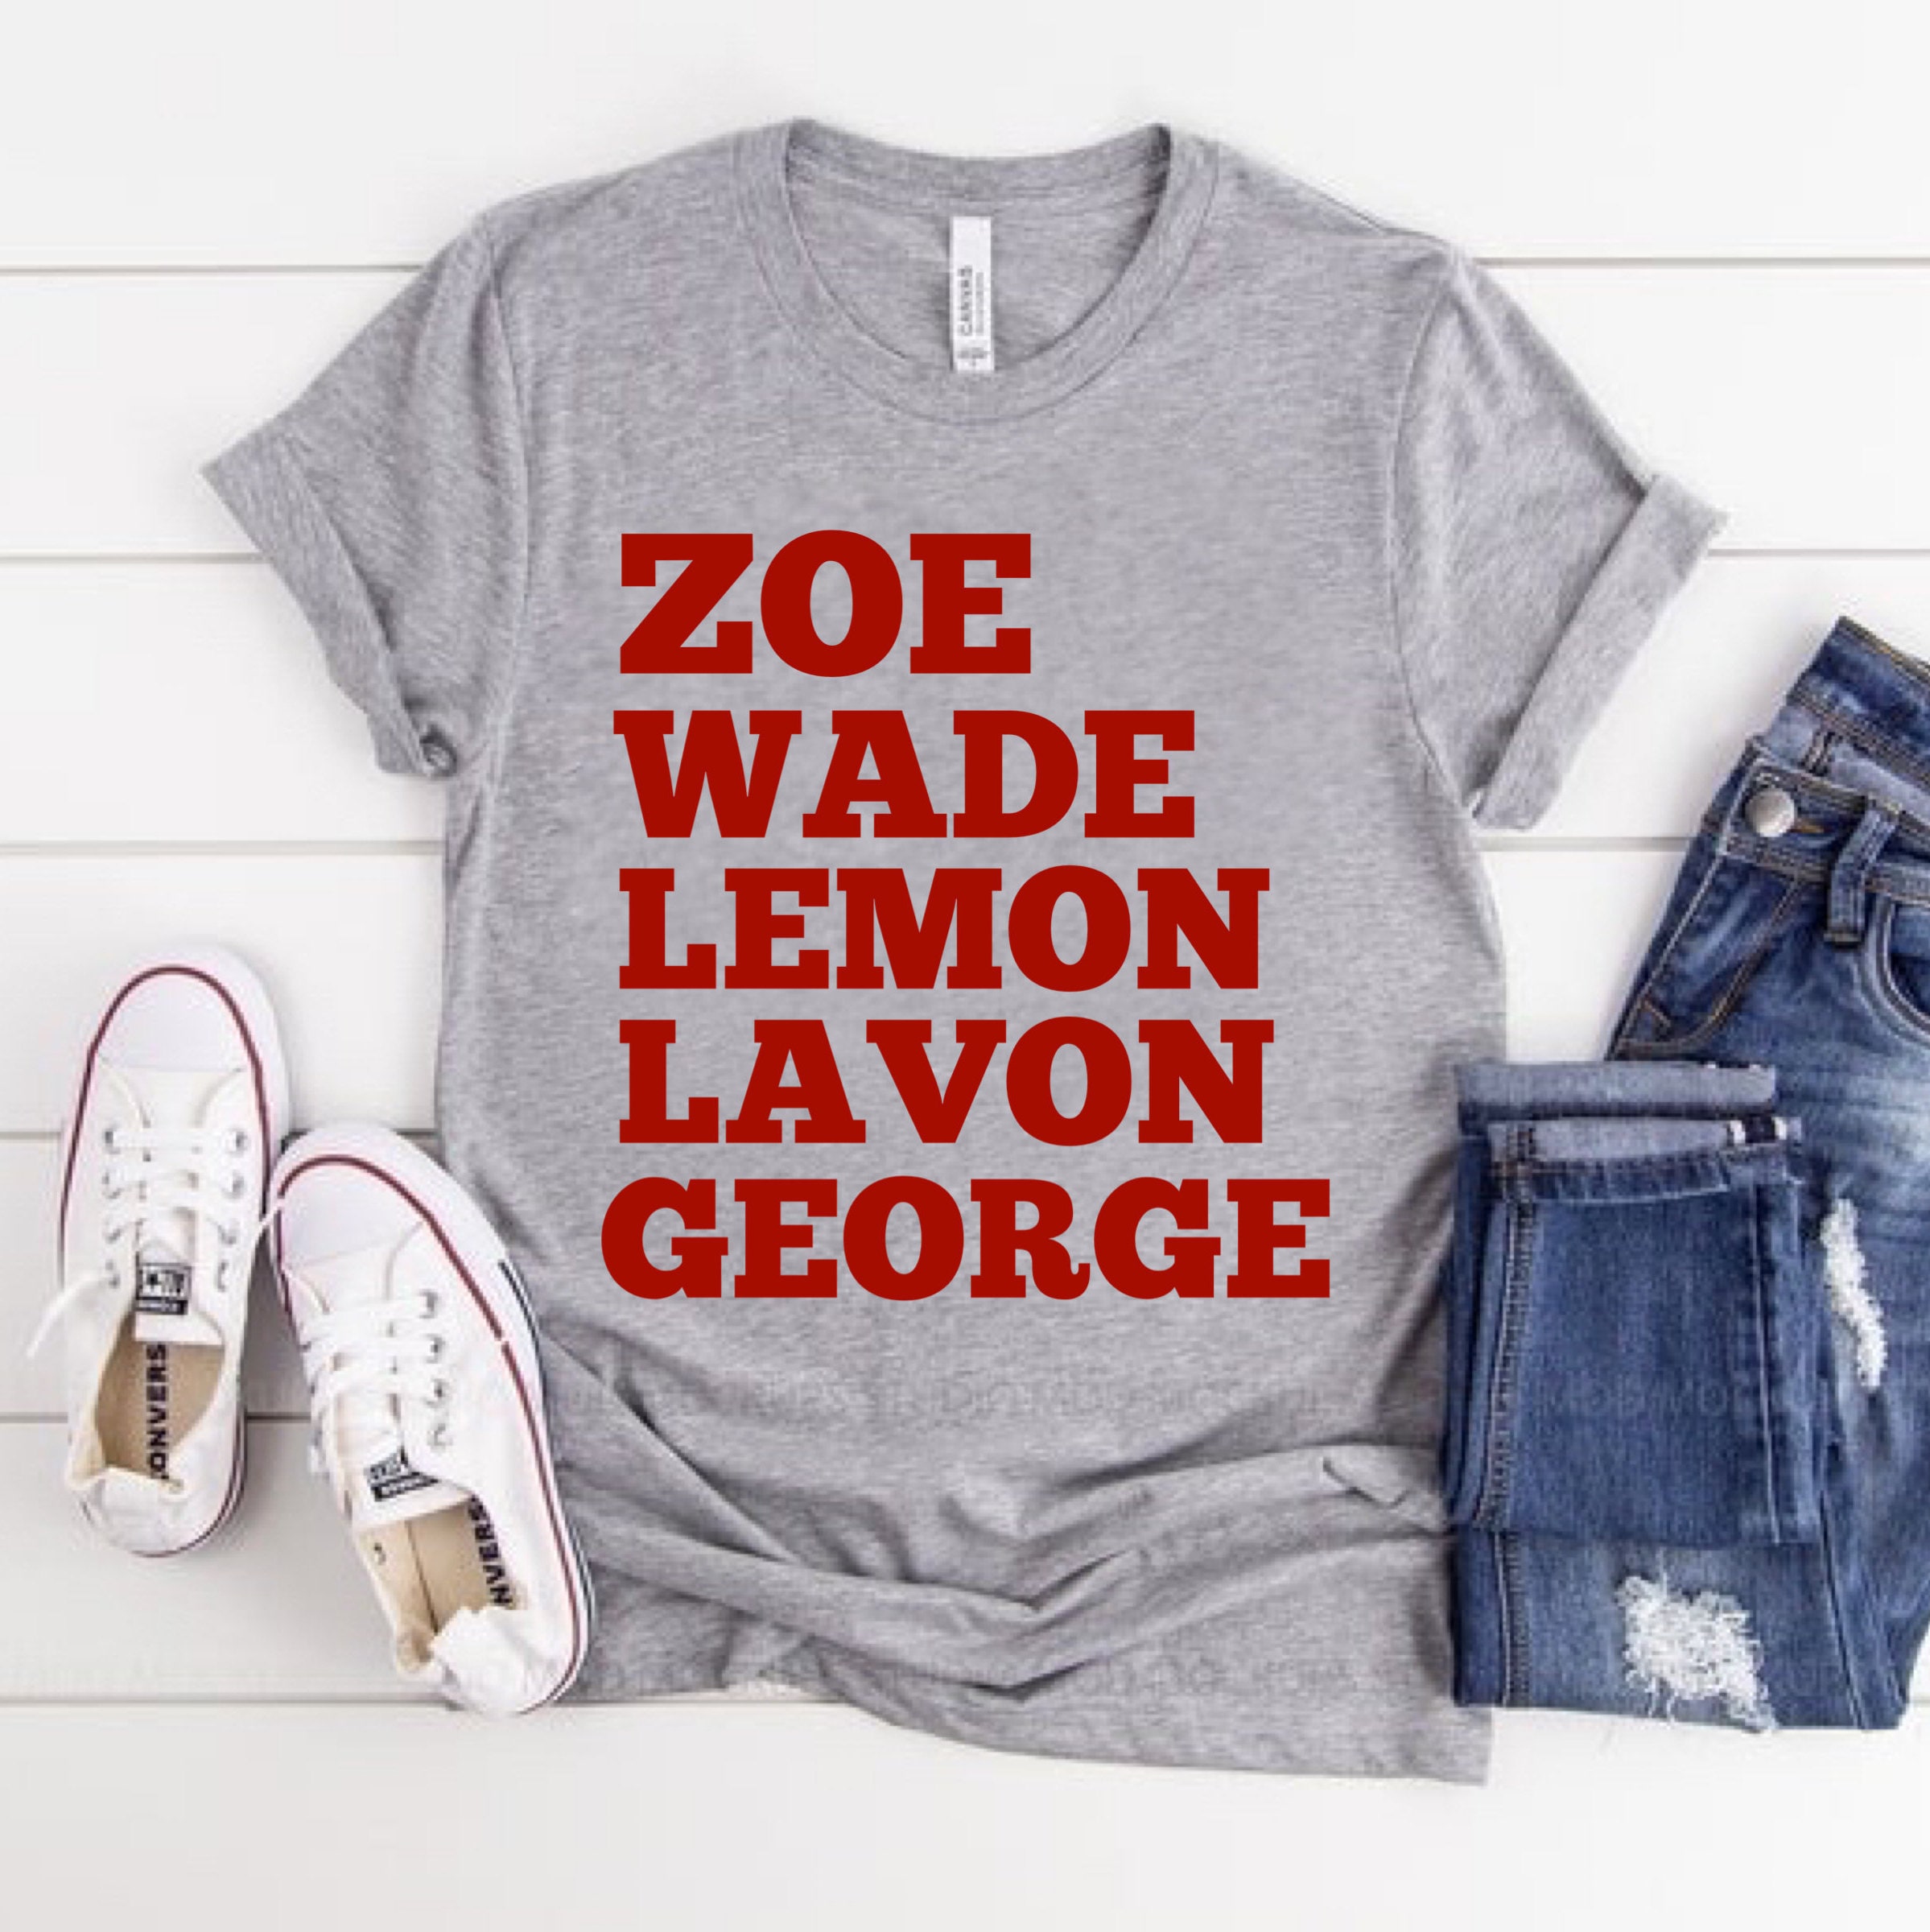 Rammer Jammer T-shirt Bluebell Alabama Zoe Hart Wade -